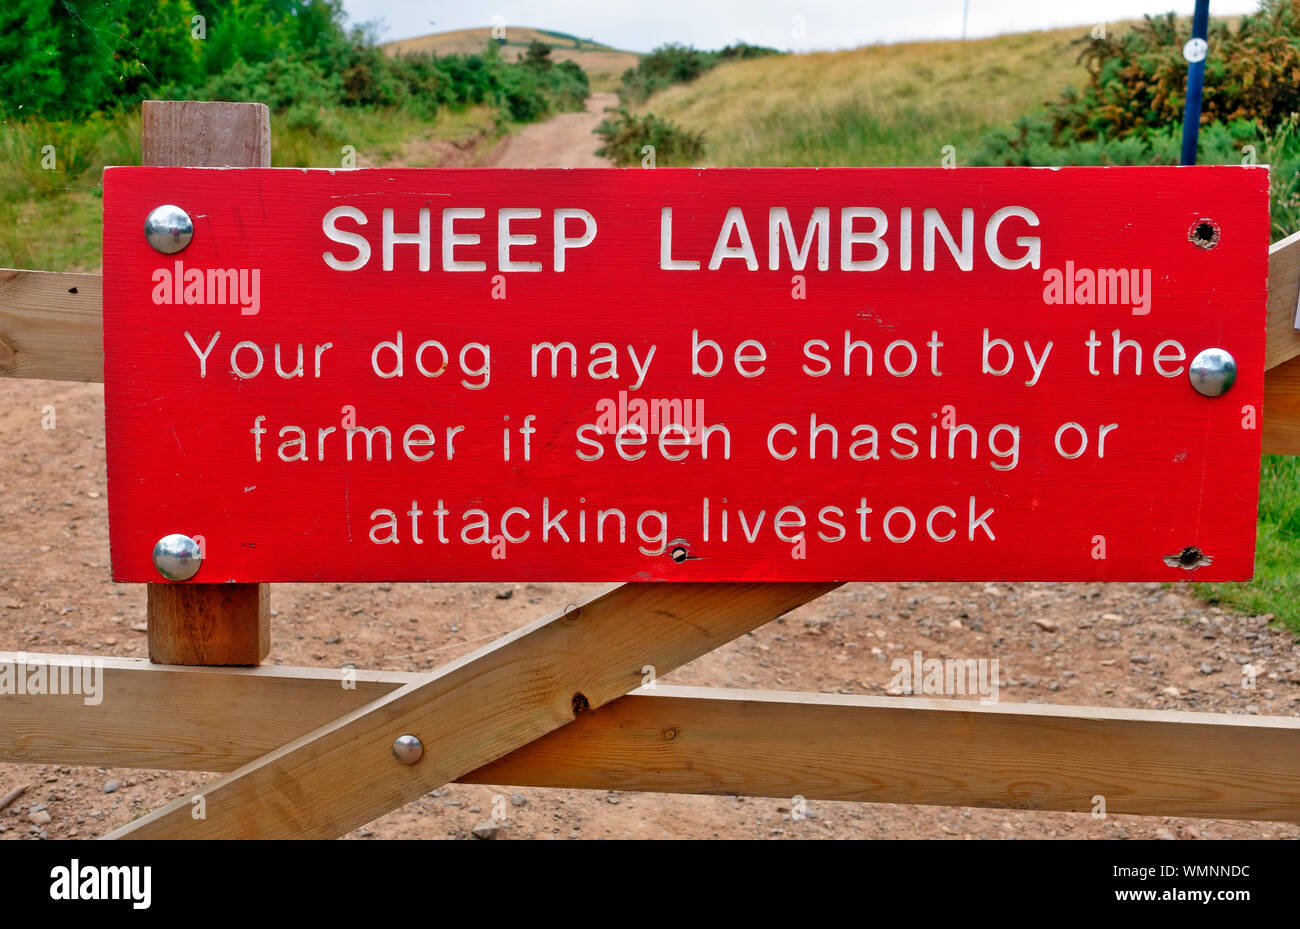 Schafe lambing Zeichen - Hund kann erschossen werden, wenn Tiere scheinen Jagen Stockfoto